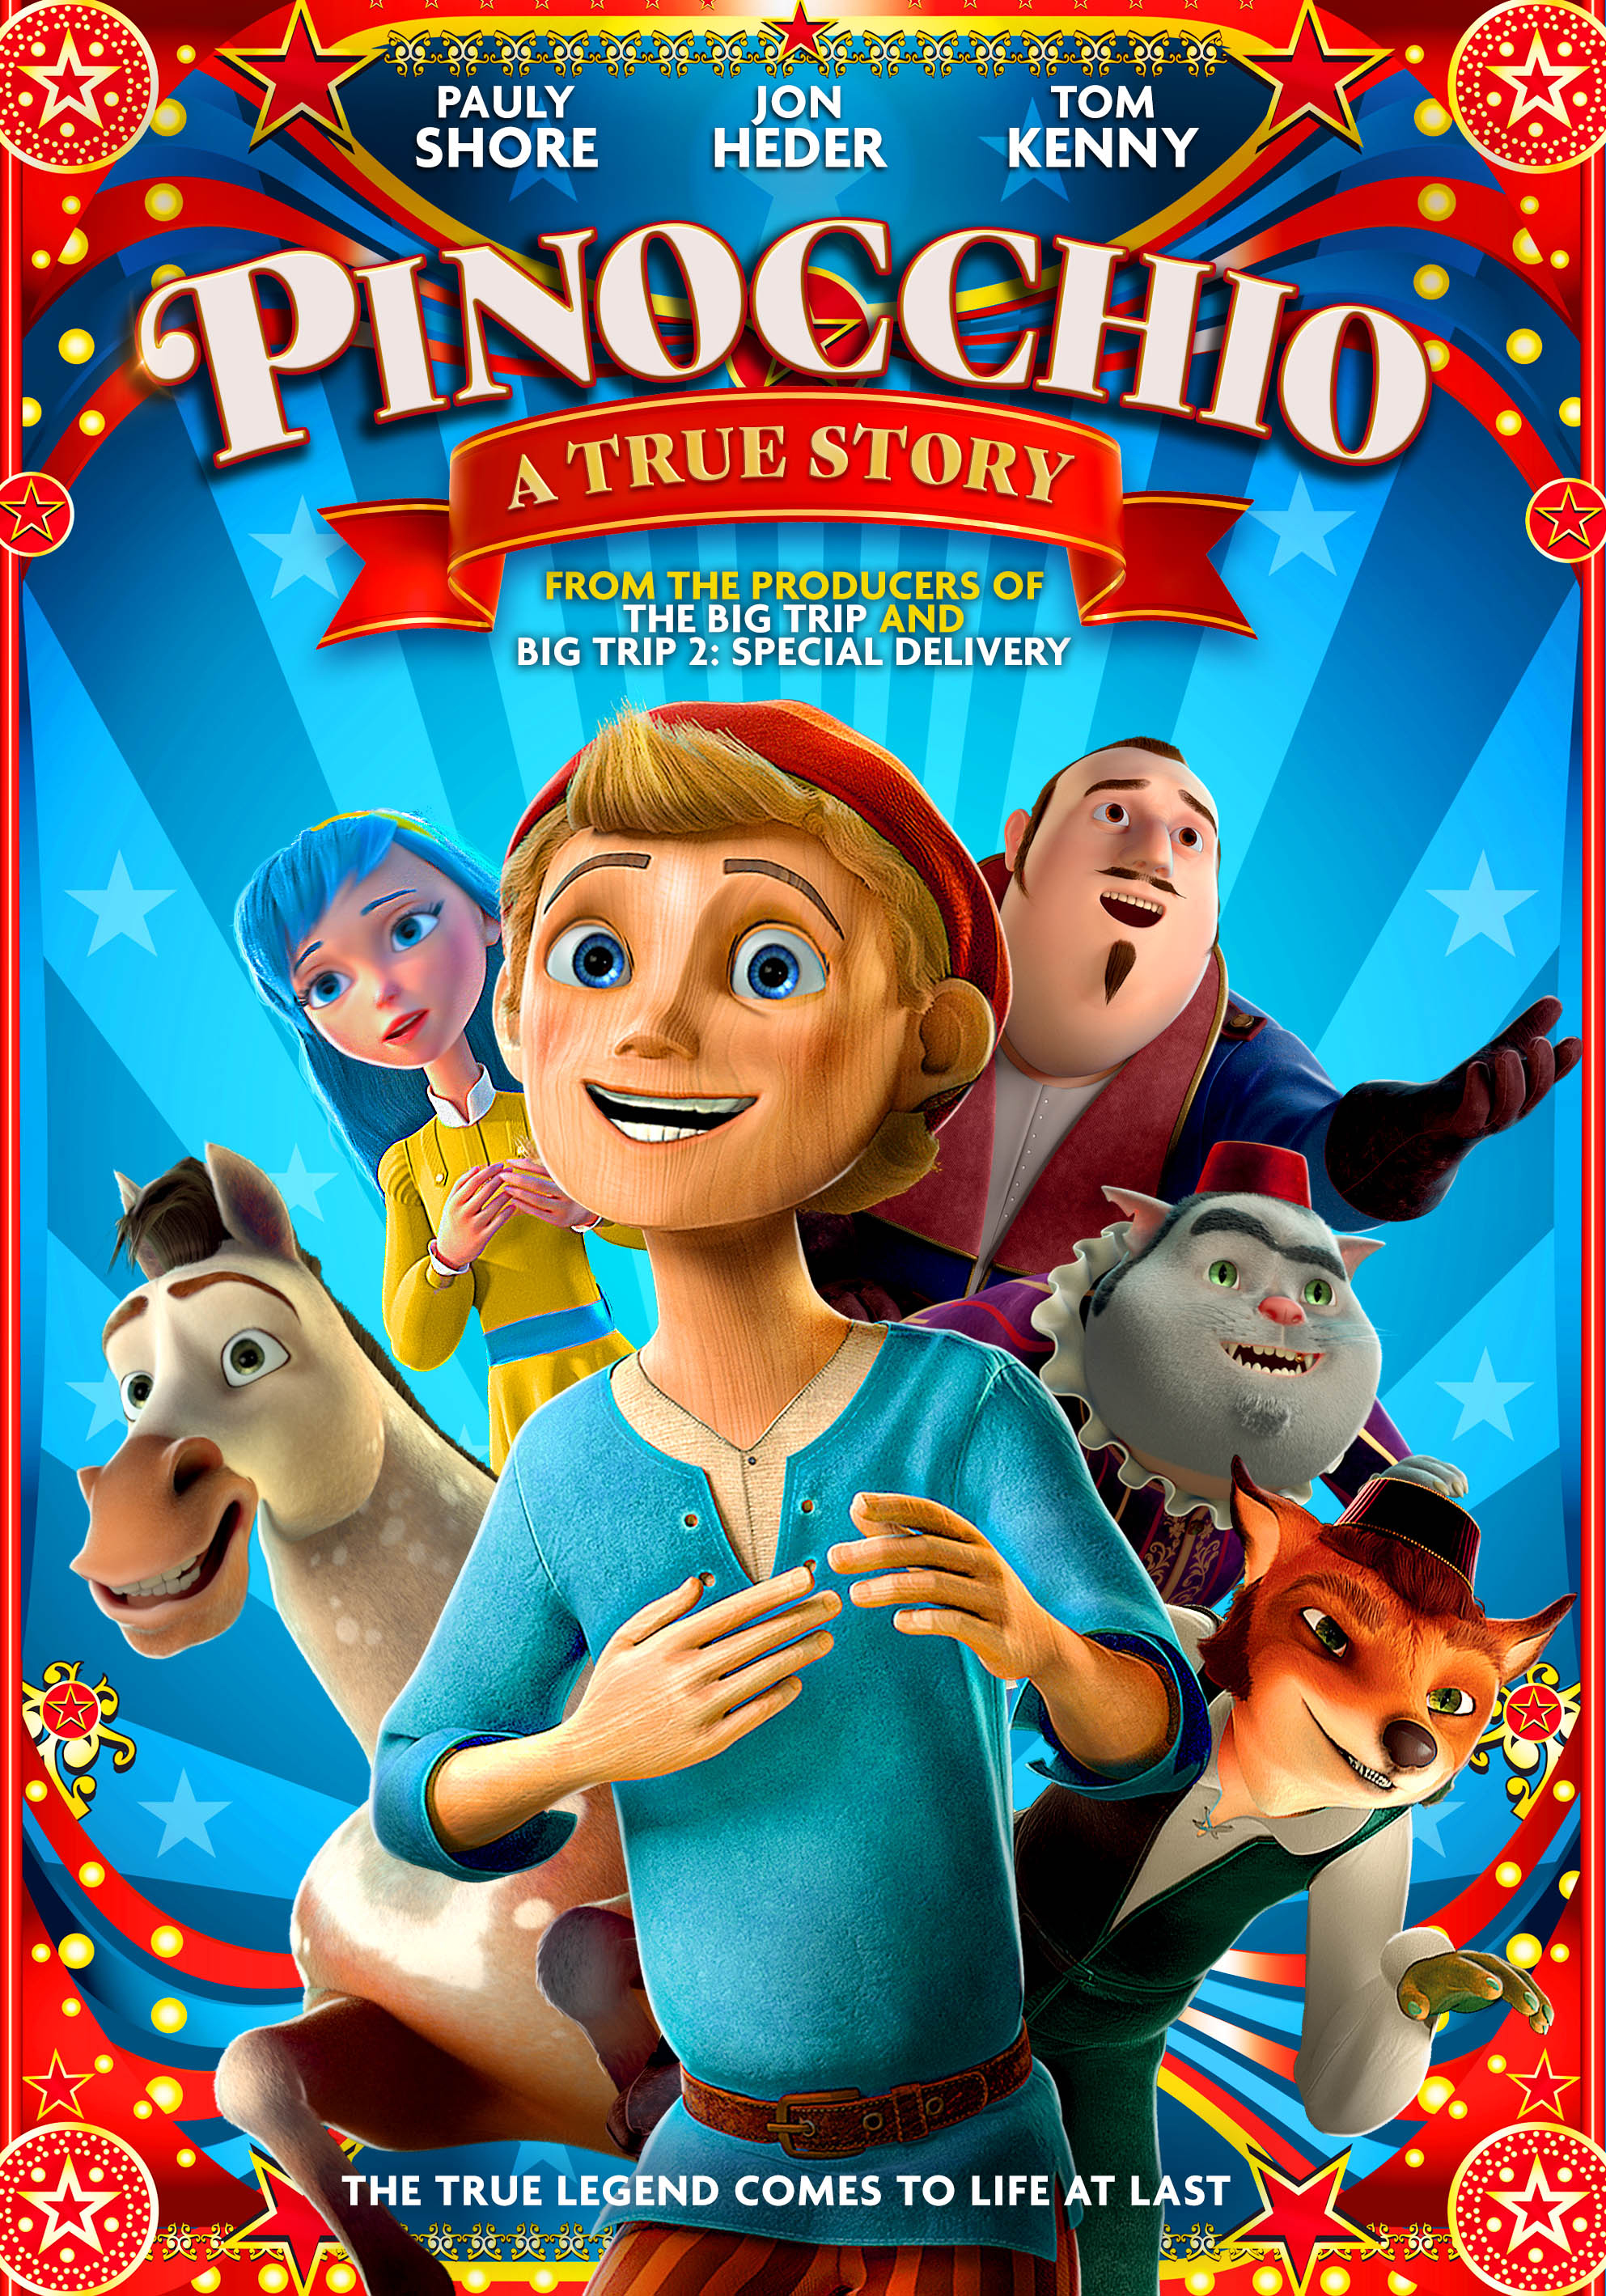 Pinocchio : A True Story